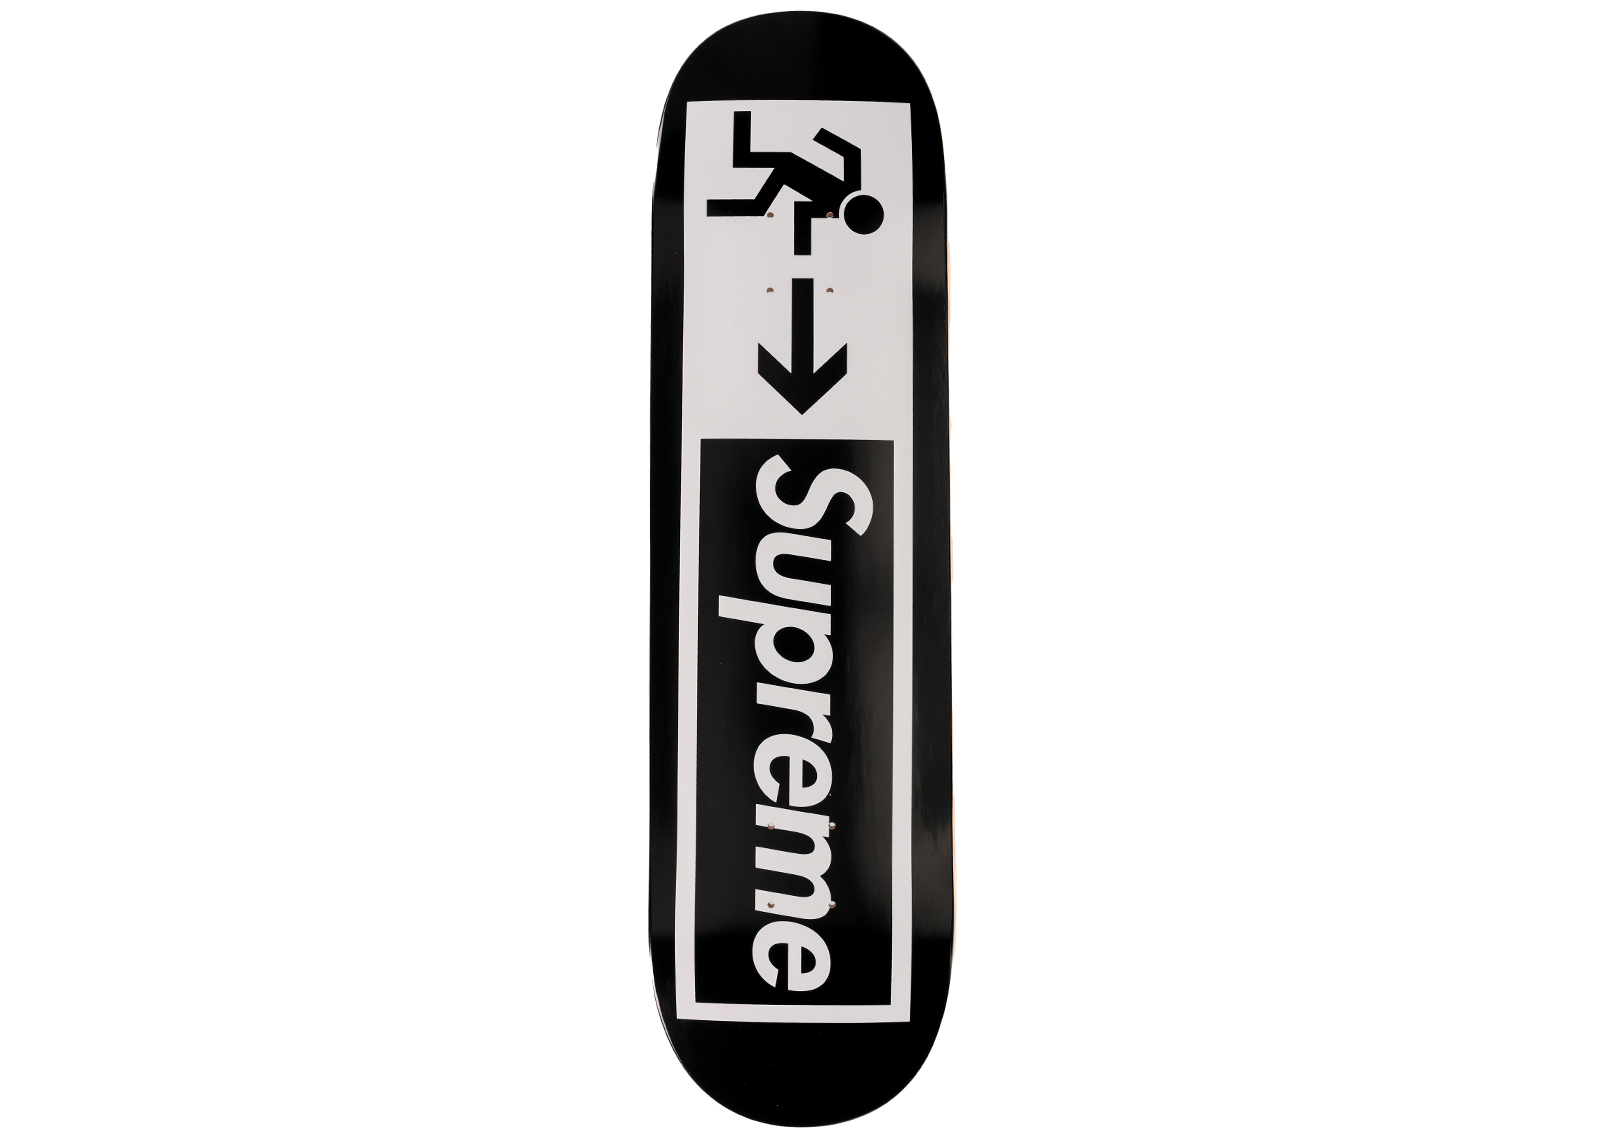 Supreme Exit Skateboard Deck Black